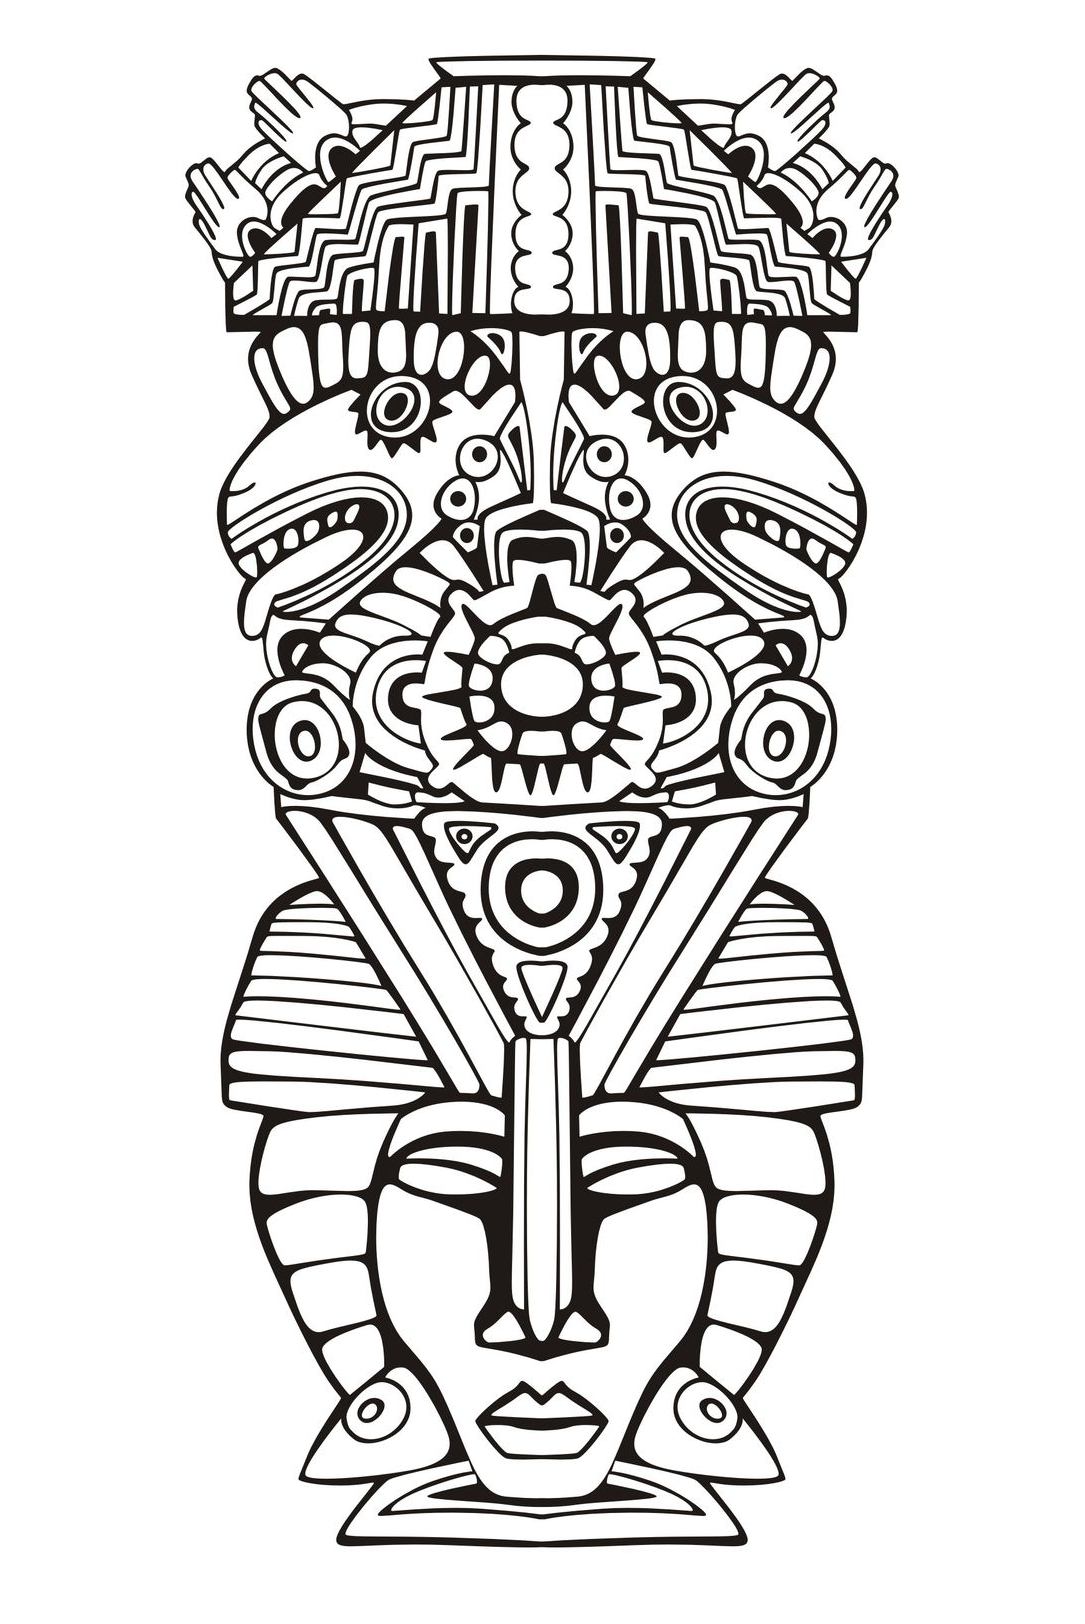 Desenhos grátis para colorir de Maias, astecas e incas para baixar, para crianças, Artista : Rocich   Fonte : 123rf